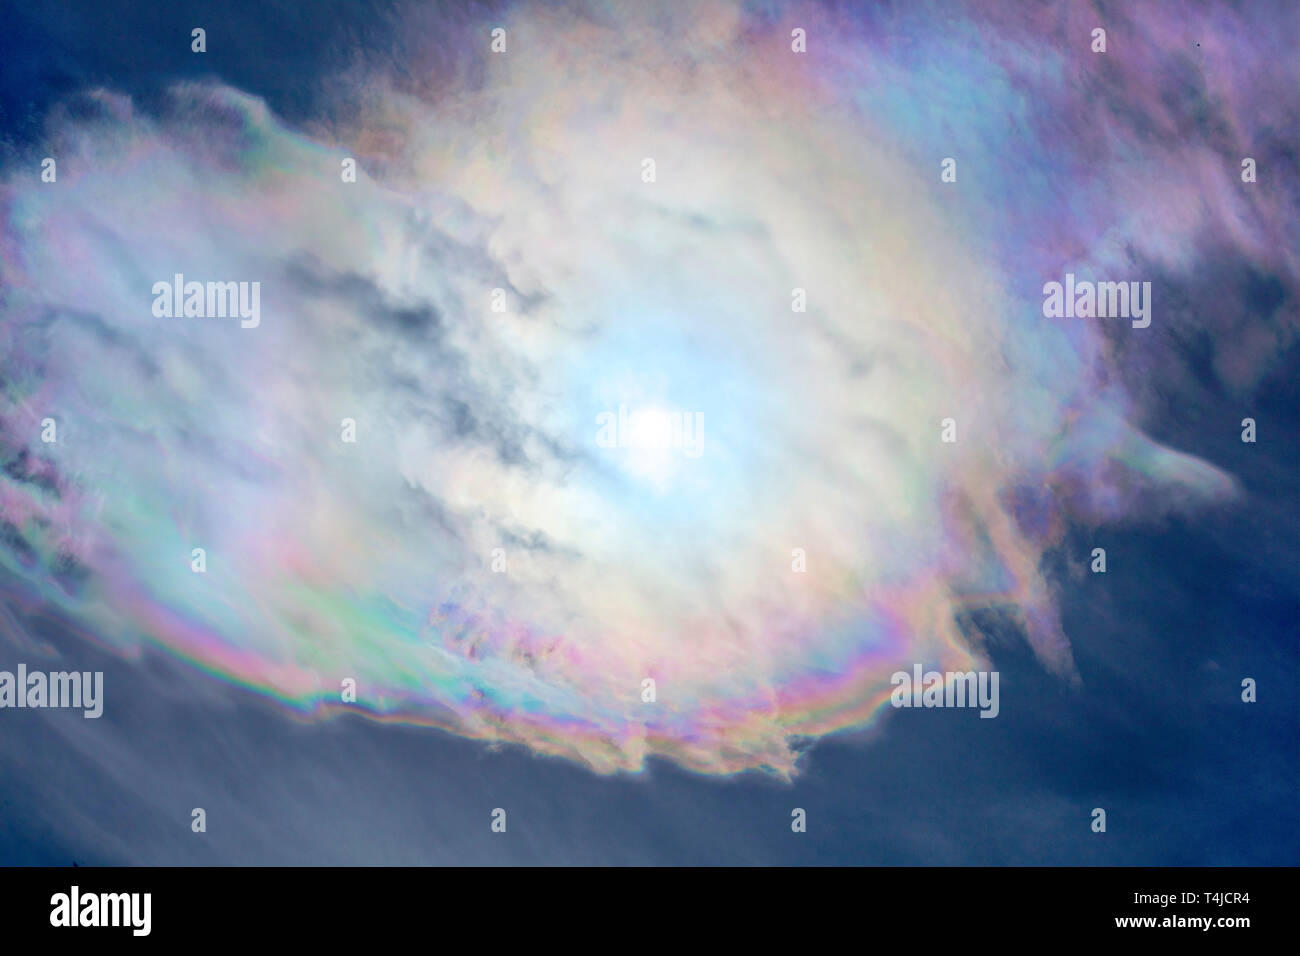 Cloud schillern ist ein optisches Phänomen, das Erstellen von farbenfrohen Pastelltönen Bands. Stockfoto